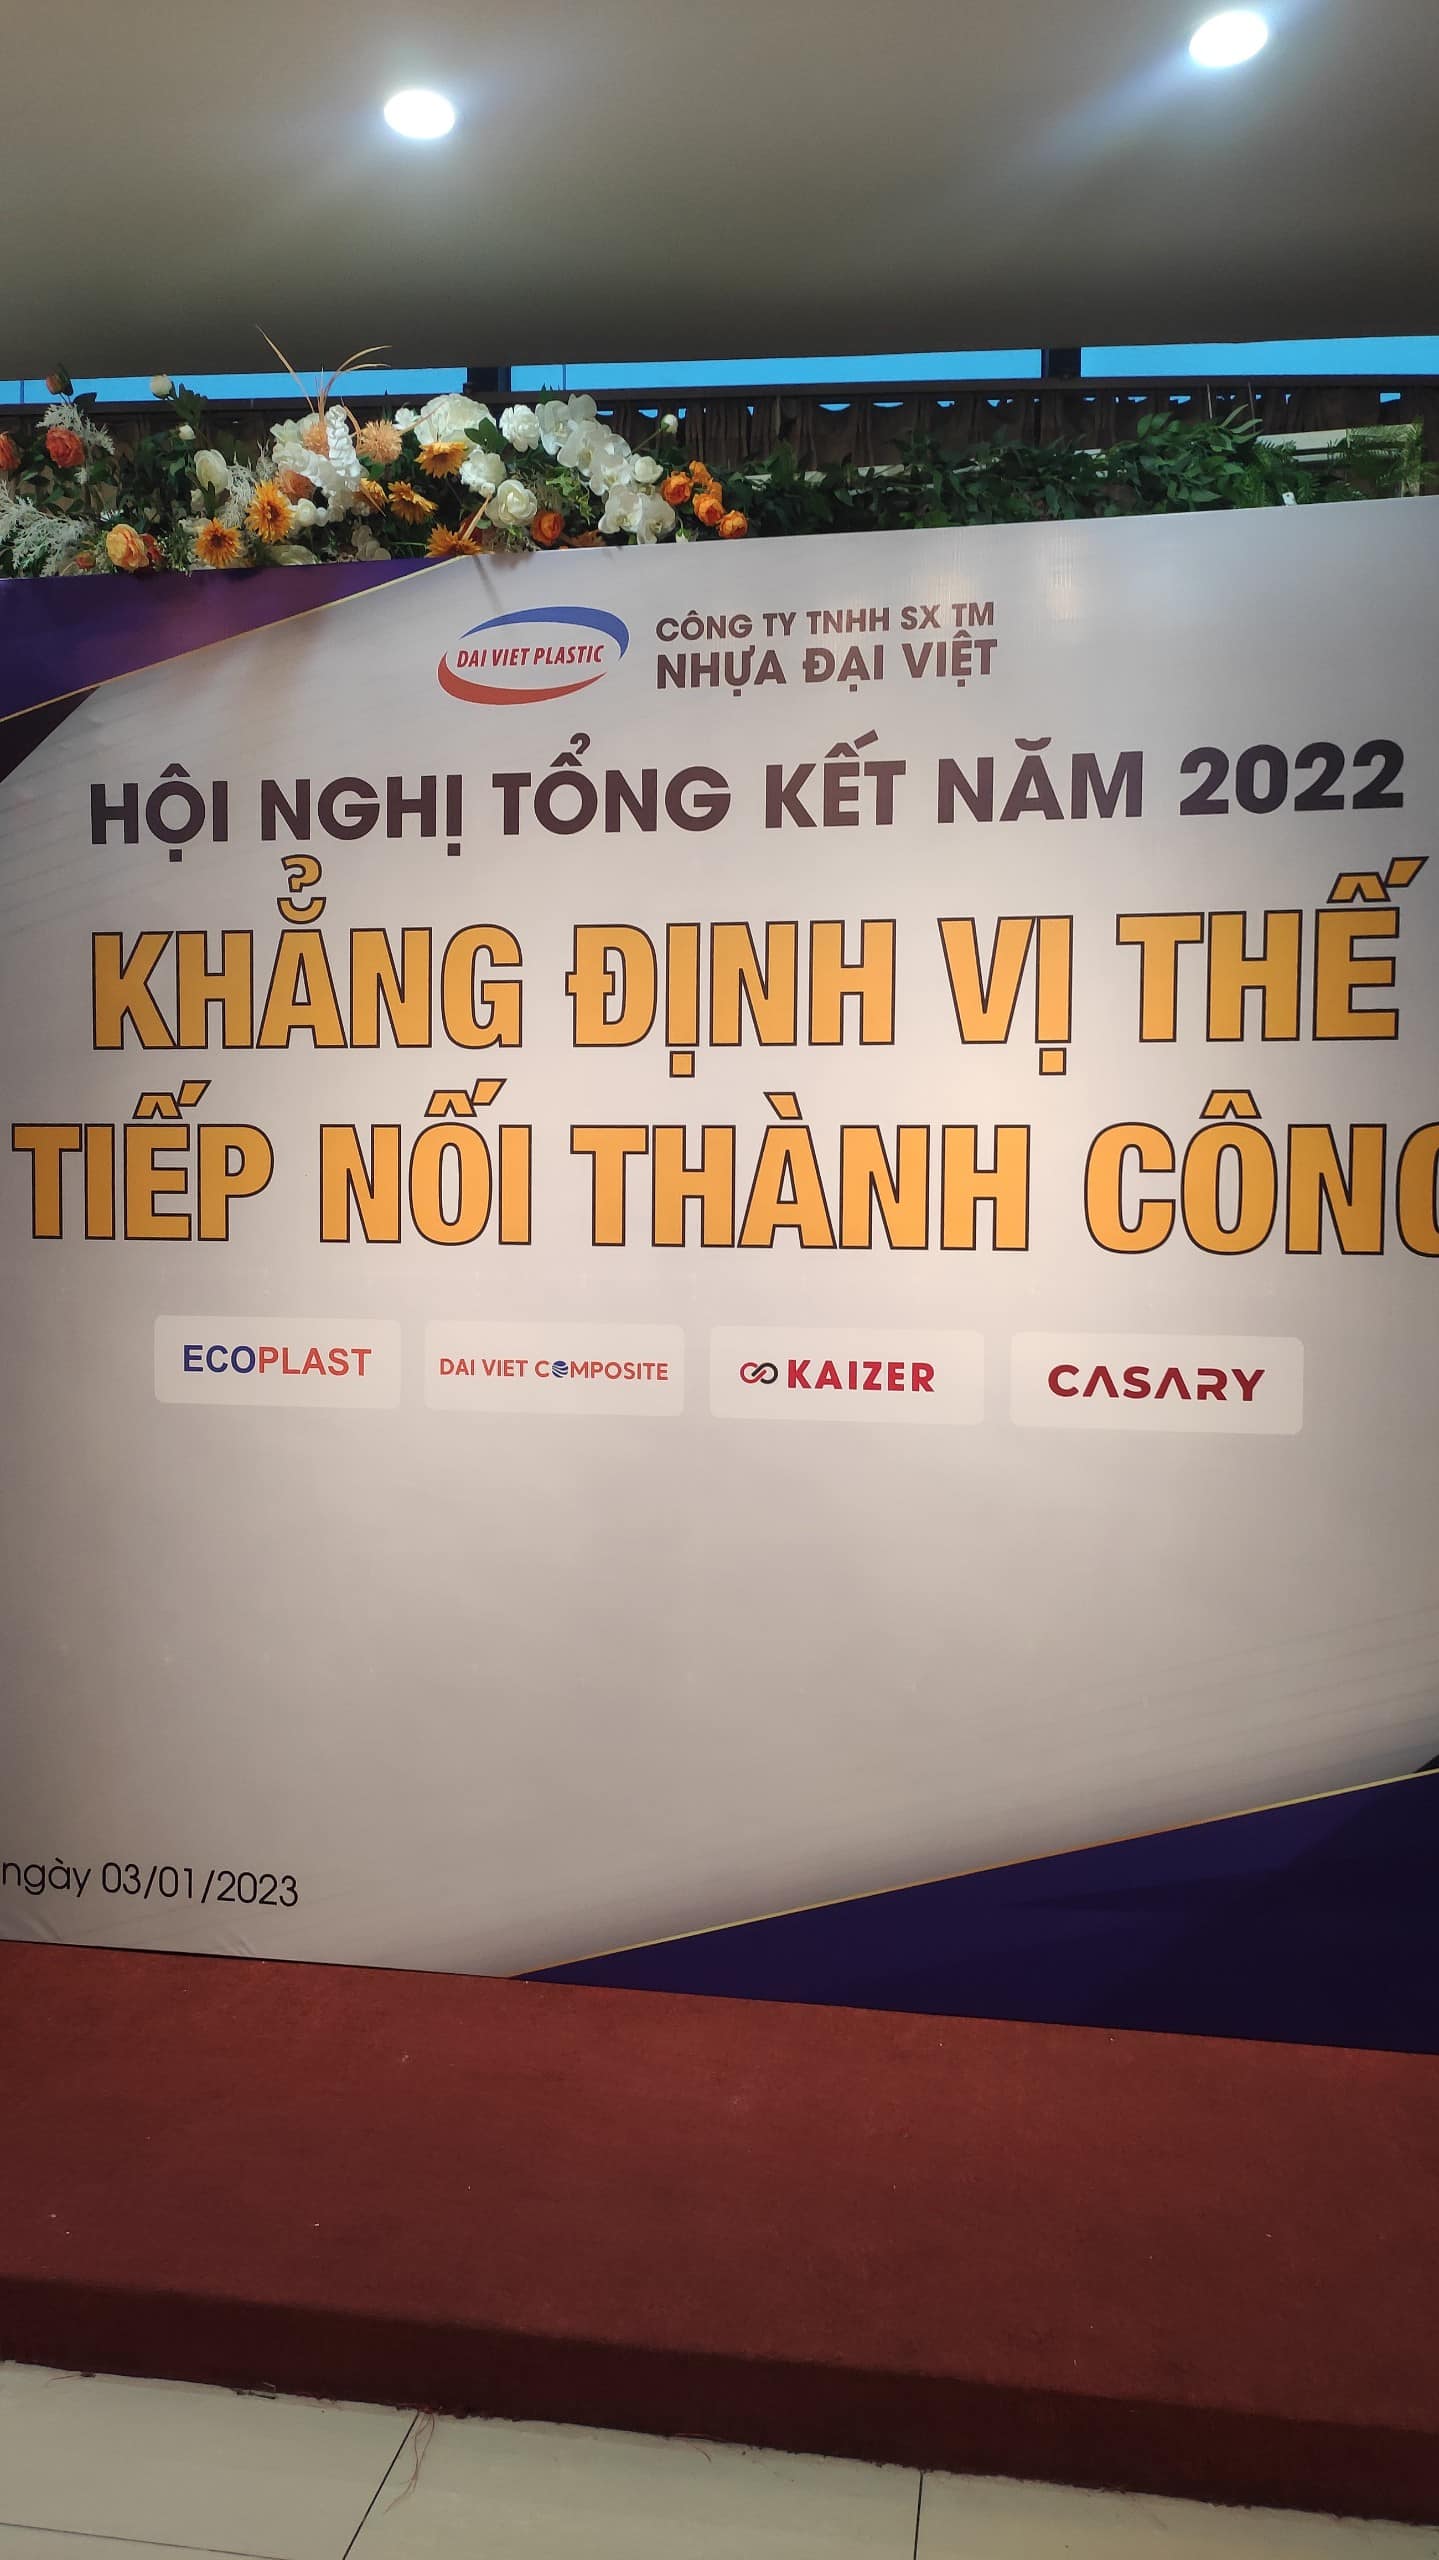 Hội nghị Tổng kết năm 2022 của công ty Nhựa Đại Việt